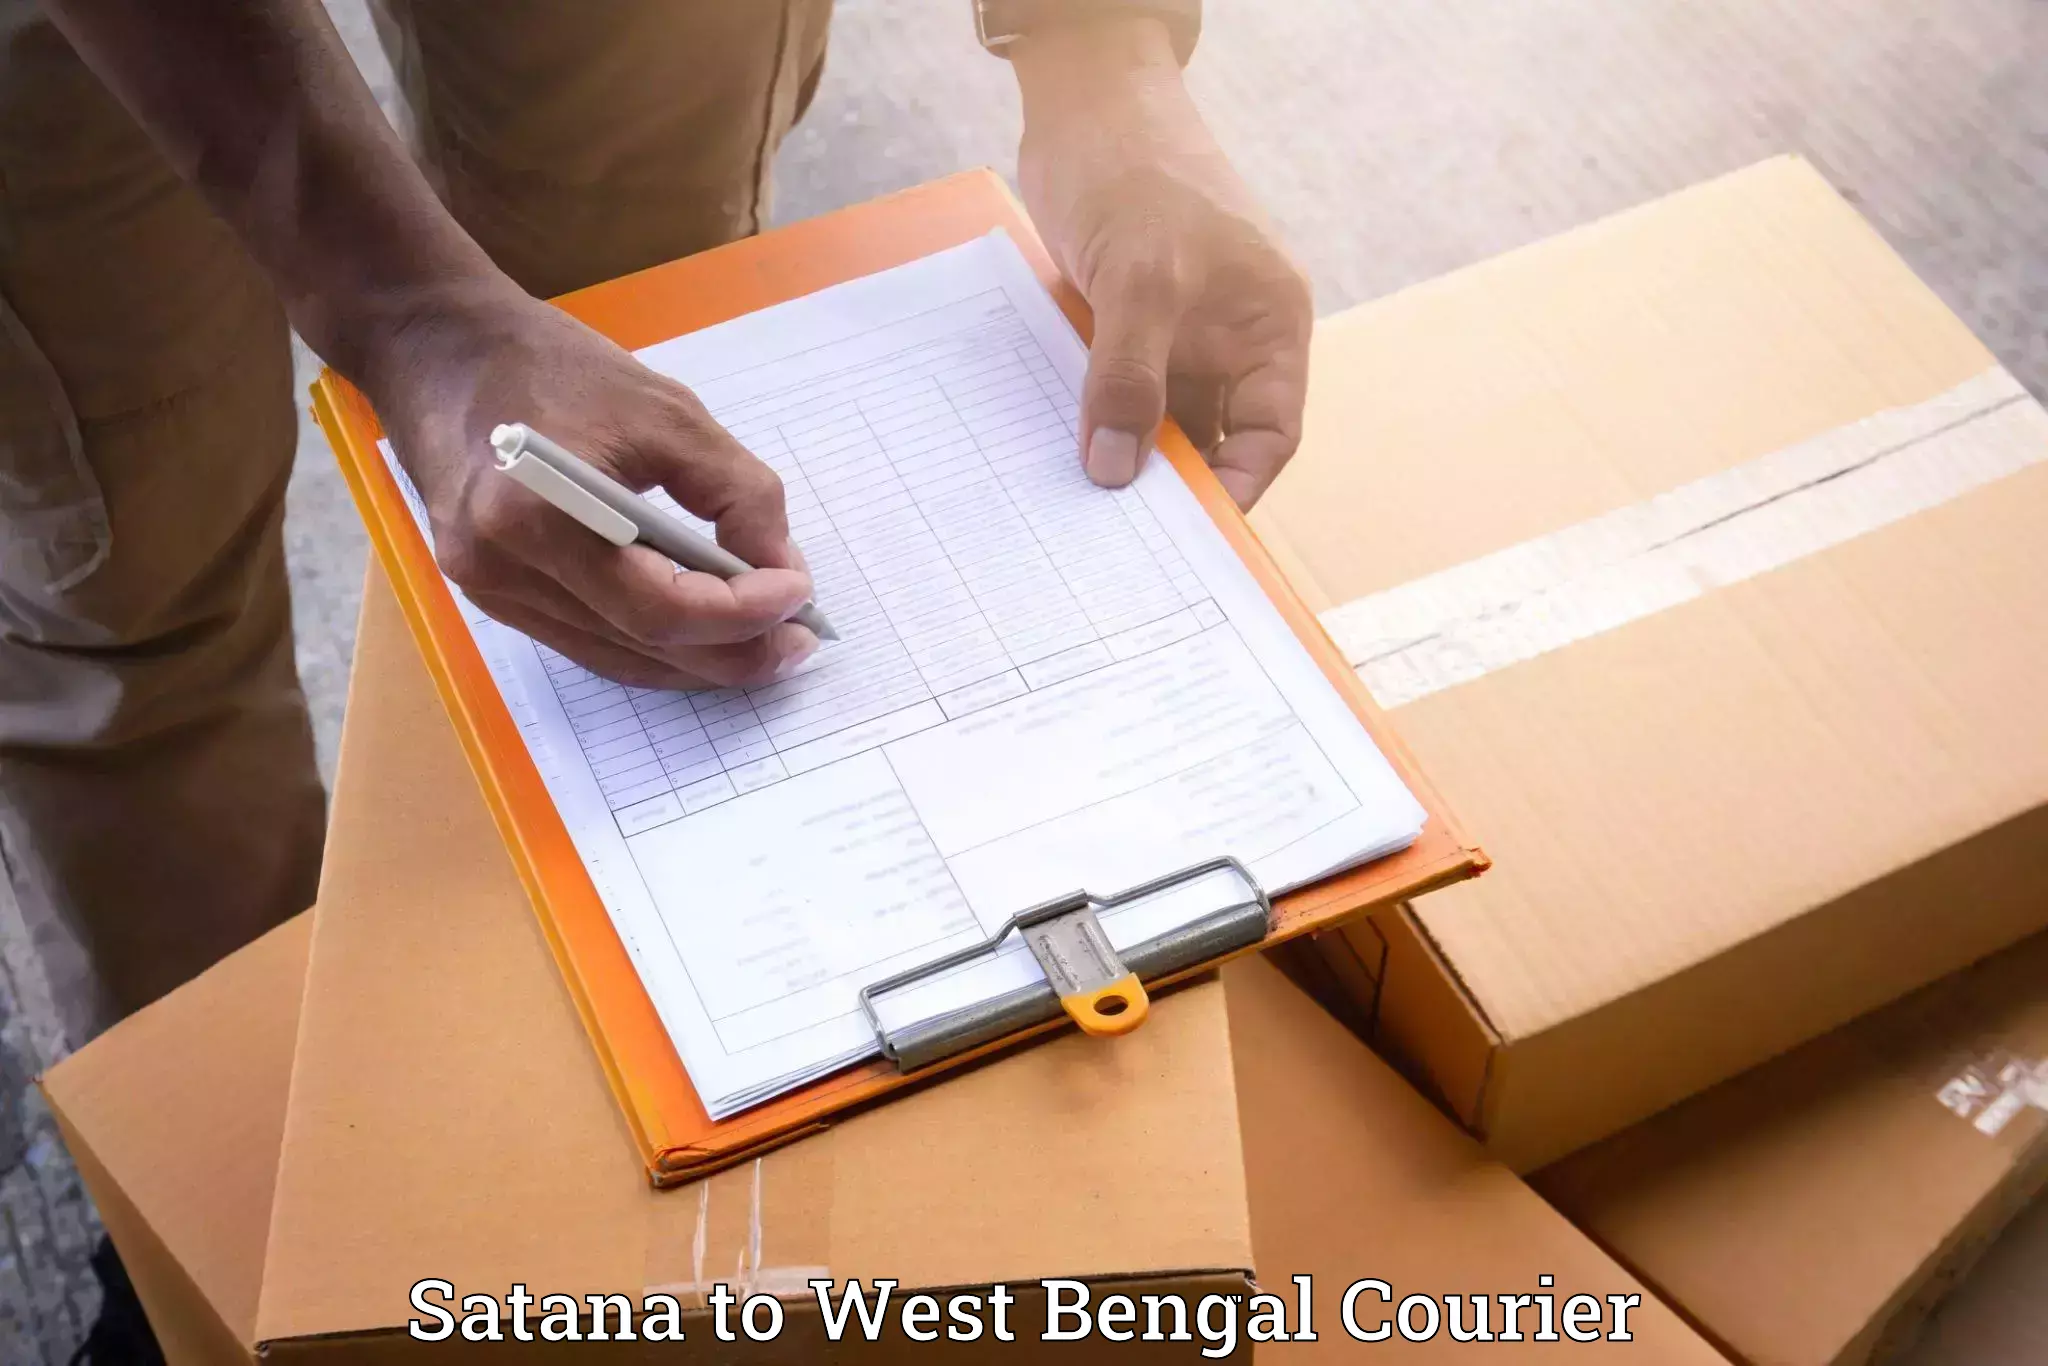 Furniture transport service Satana to West Bengal